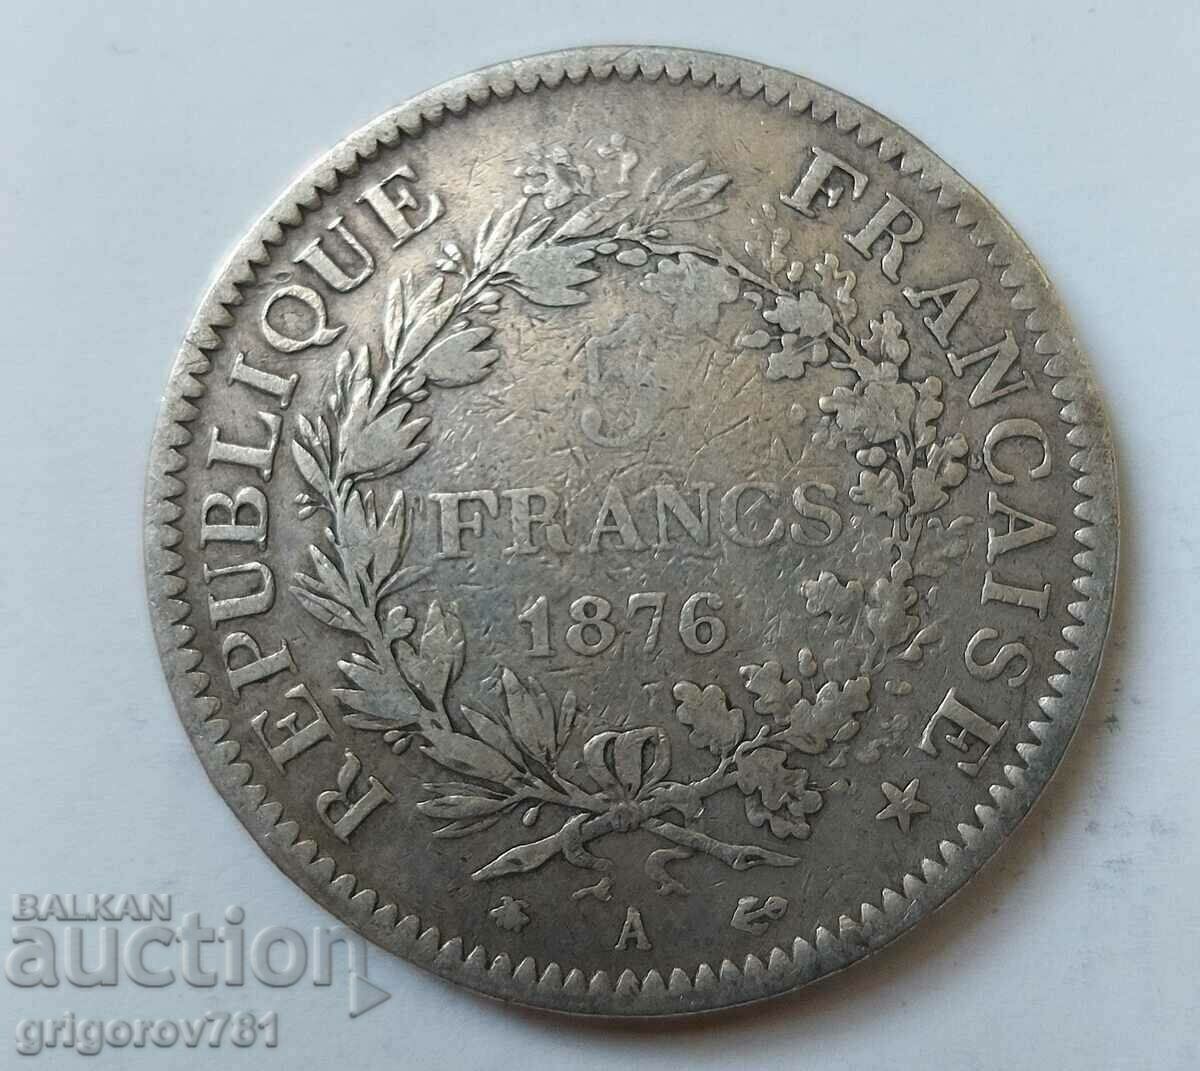 5 Φράγκα Ασήμι Γαλλία 1976 A Rare - Ασημένιο νόμισμα #88